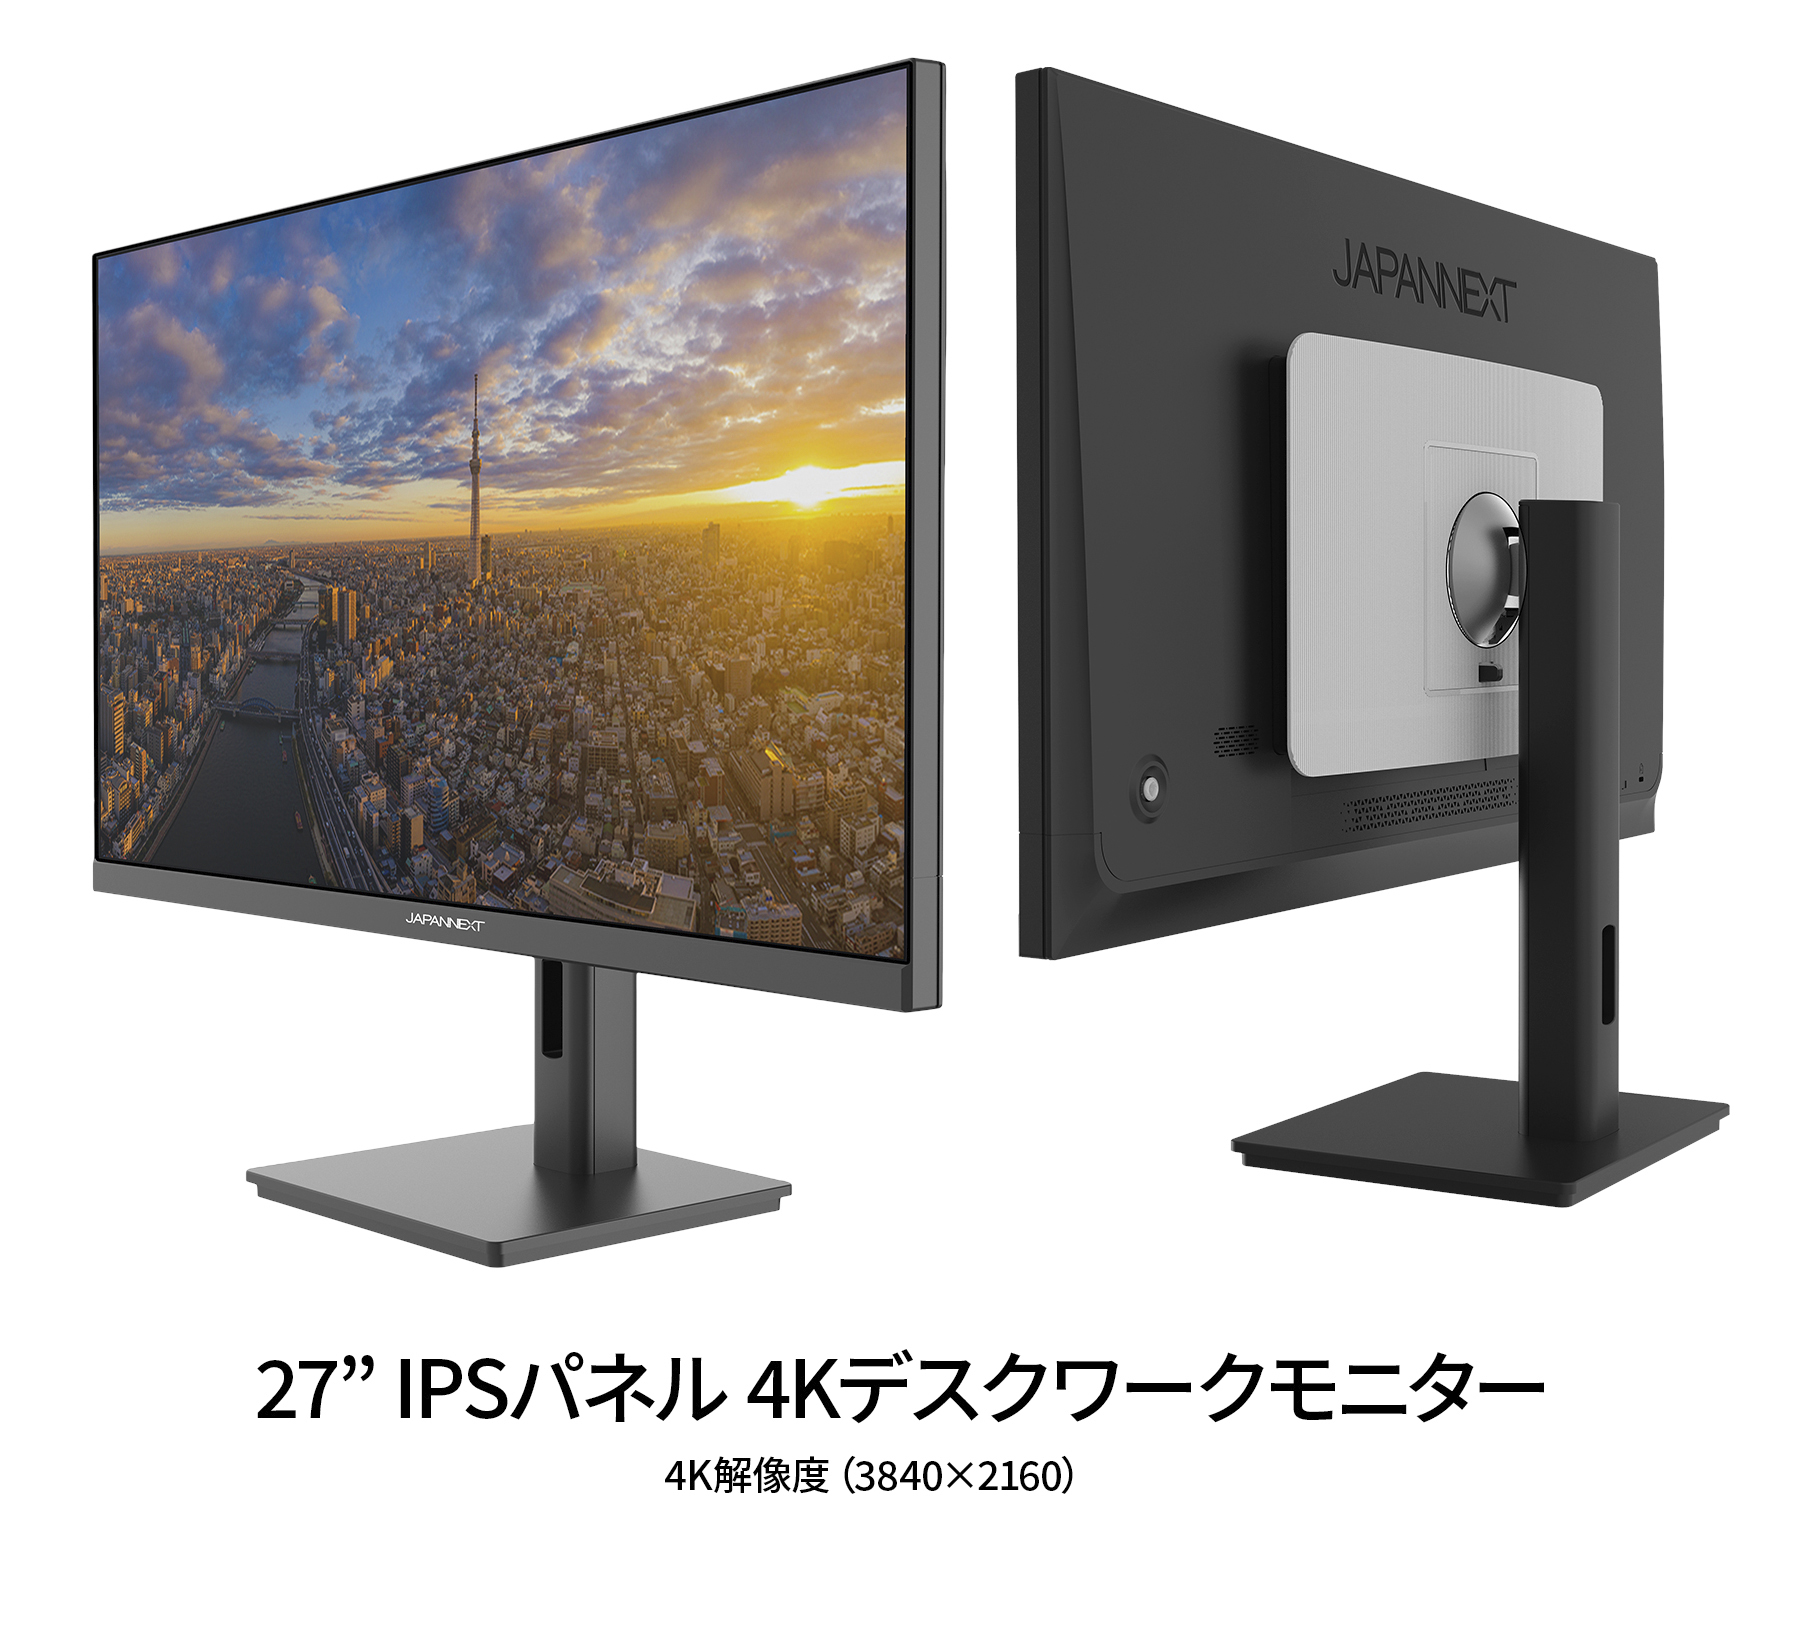 JAPANNEXT 27インチ IPSパネル搭載 4K(3840x2160)解像度 液晶モニター JN-IPS2709UHDR HDMI DP HDR  sRGB100% PBP/PIP対応 PCモニター ジャパンネクスト